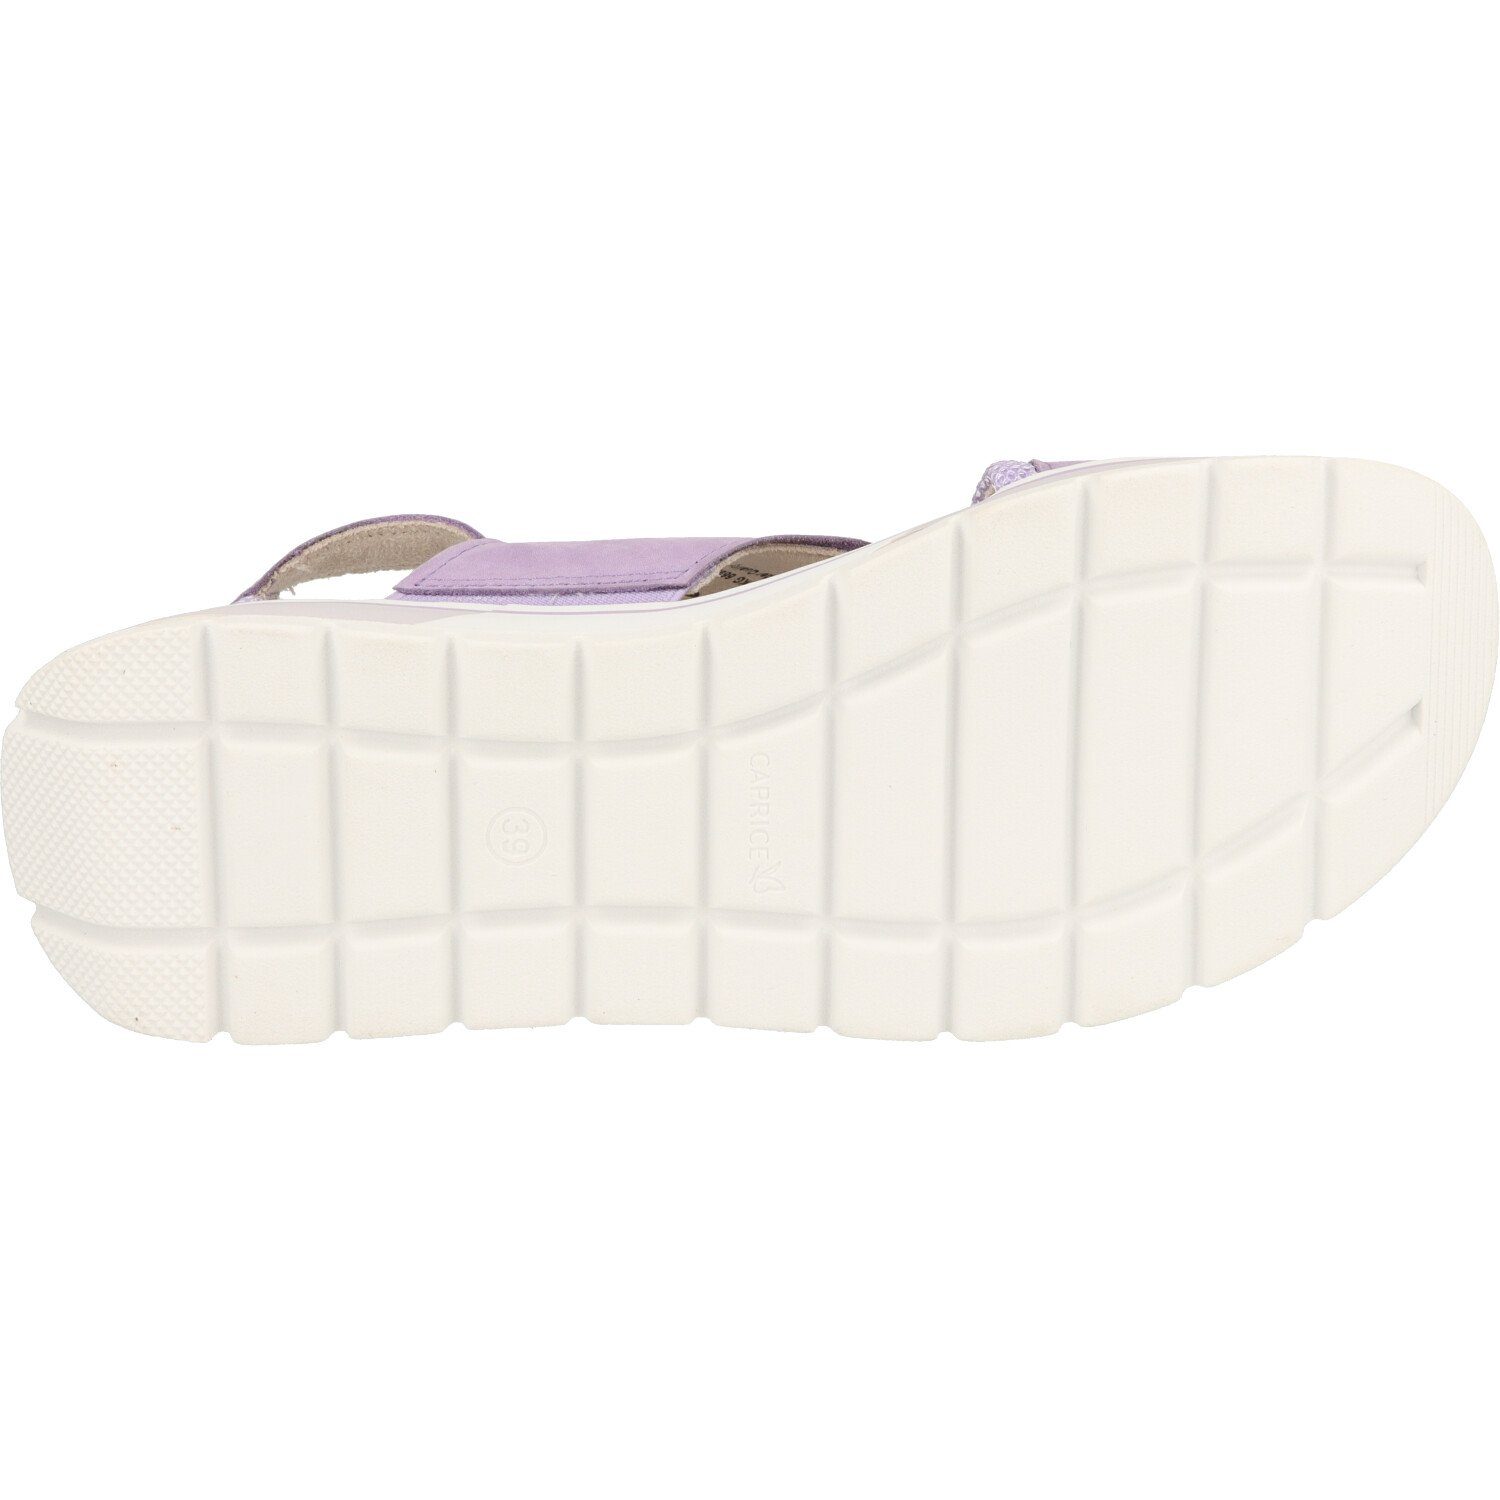 Caprice Damen Schuhe Flache Sandale 9-28704-20 Climotion Klett Purple Sandale